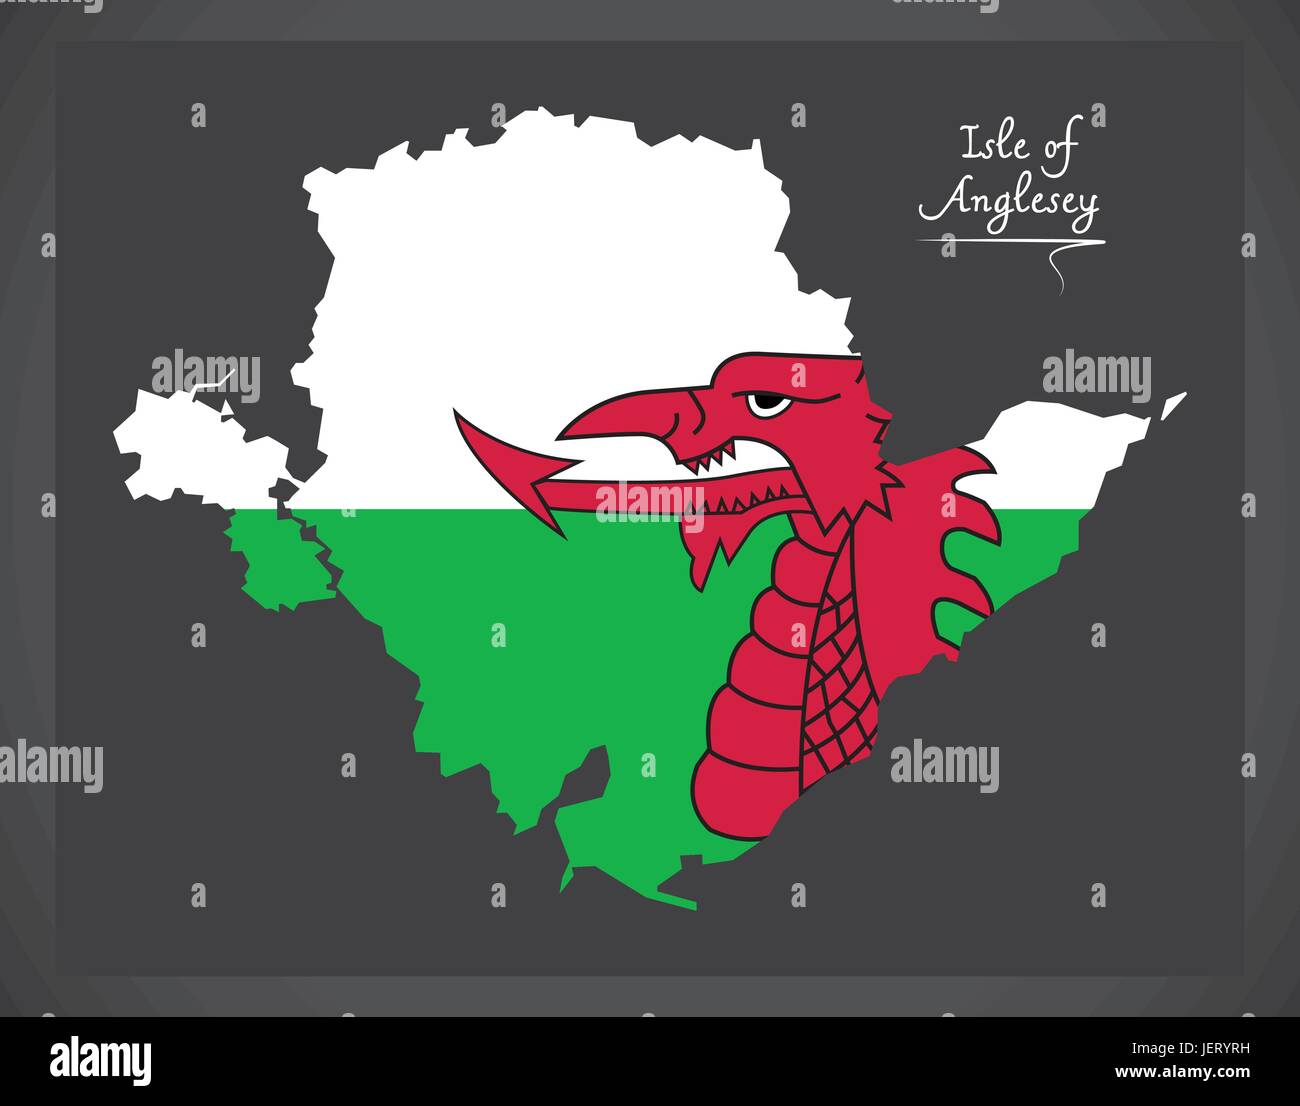 Isle of Anglesey Pays de Galles carte avec drapeau national gallois illustration Illustration de Vecteur